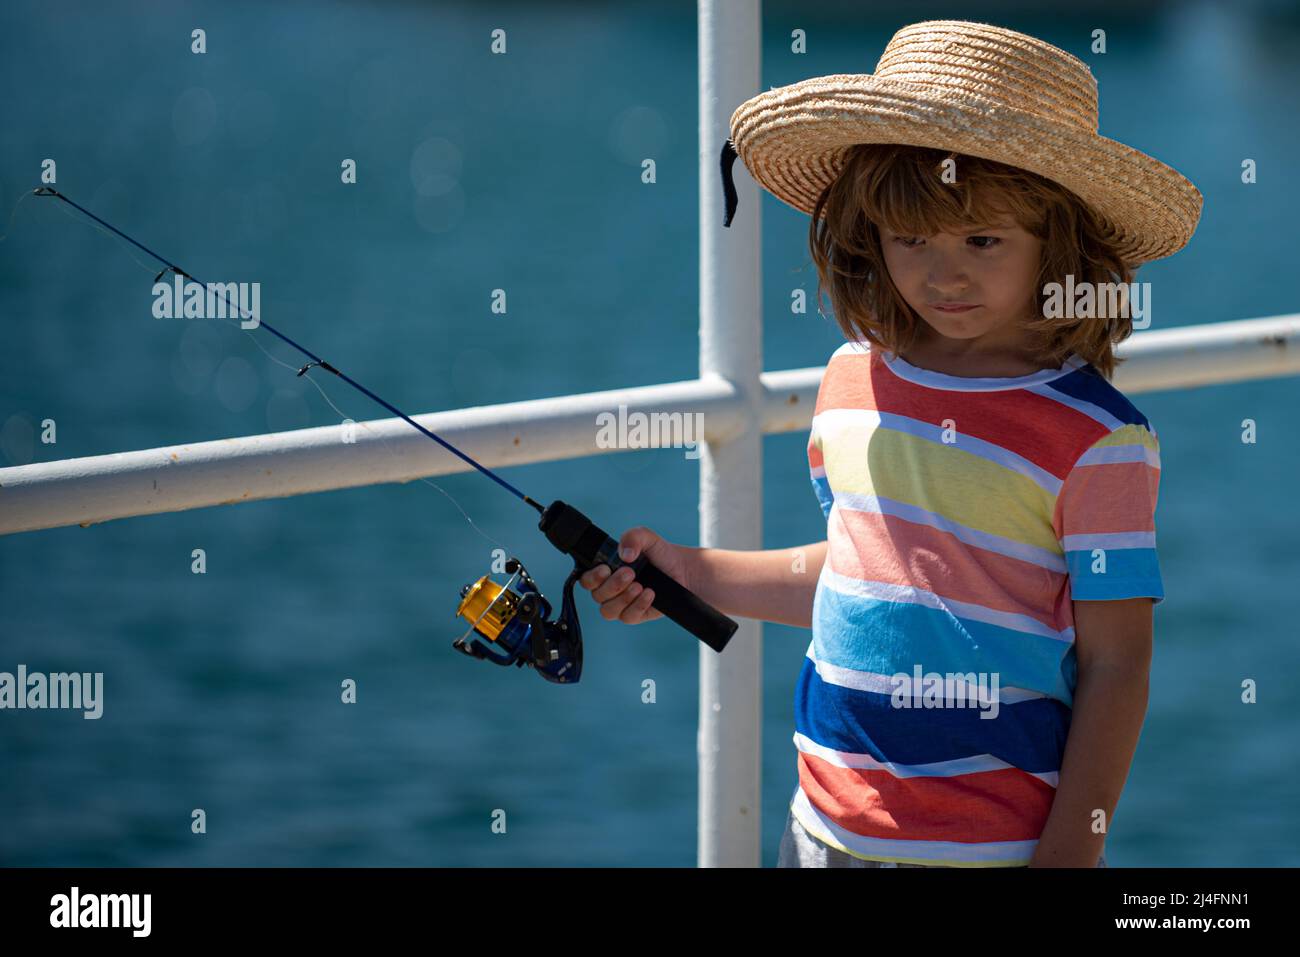 Bambino ragazzo impegnato in hobby di pesca, tiene una canna da